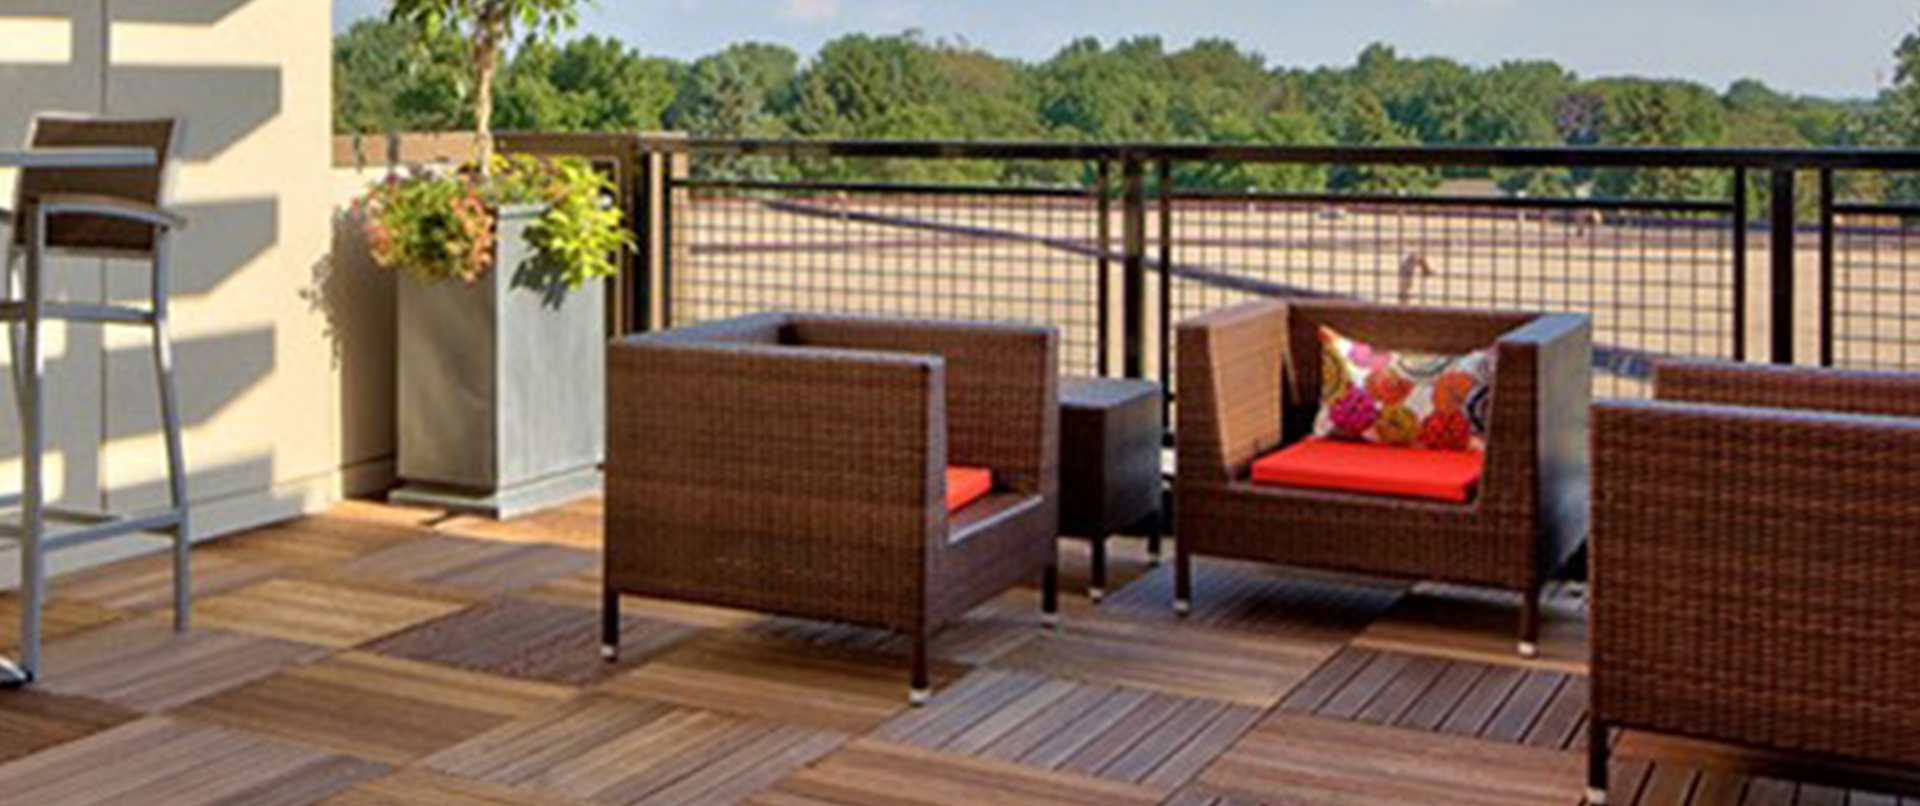 Luxury Wood Tile Rooftop Deck